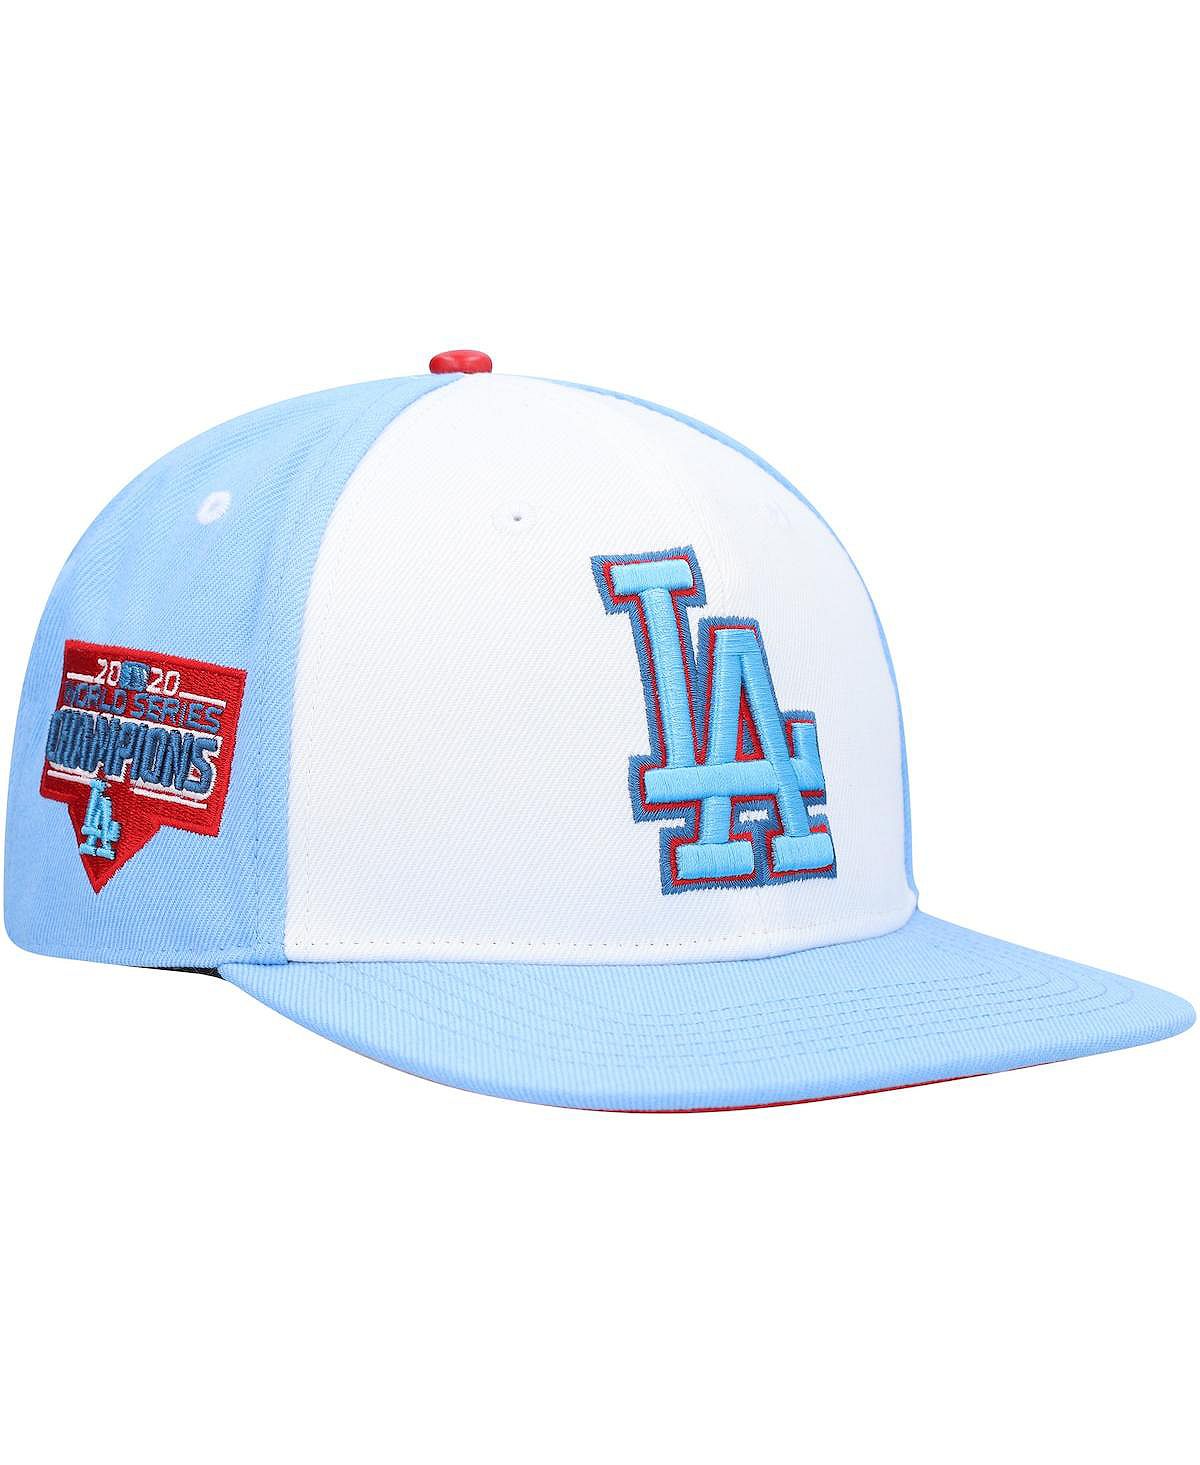 Мужская белая, голубая кепка Los Angeles Dodgers синяя малиновая кепка с капельным мороженым Snapback Pro Standard